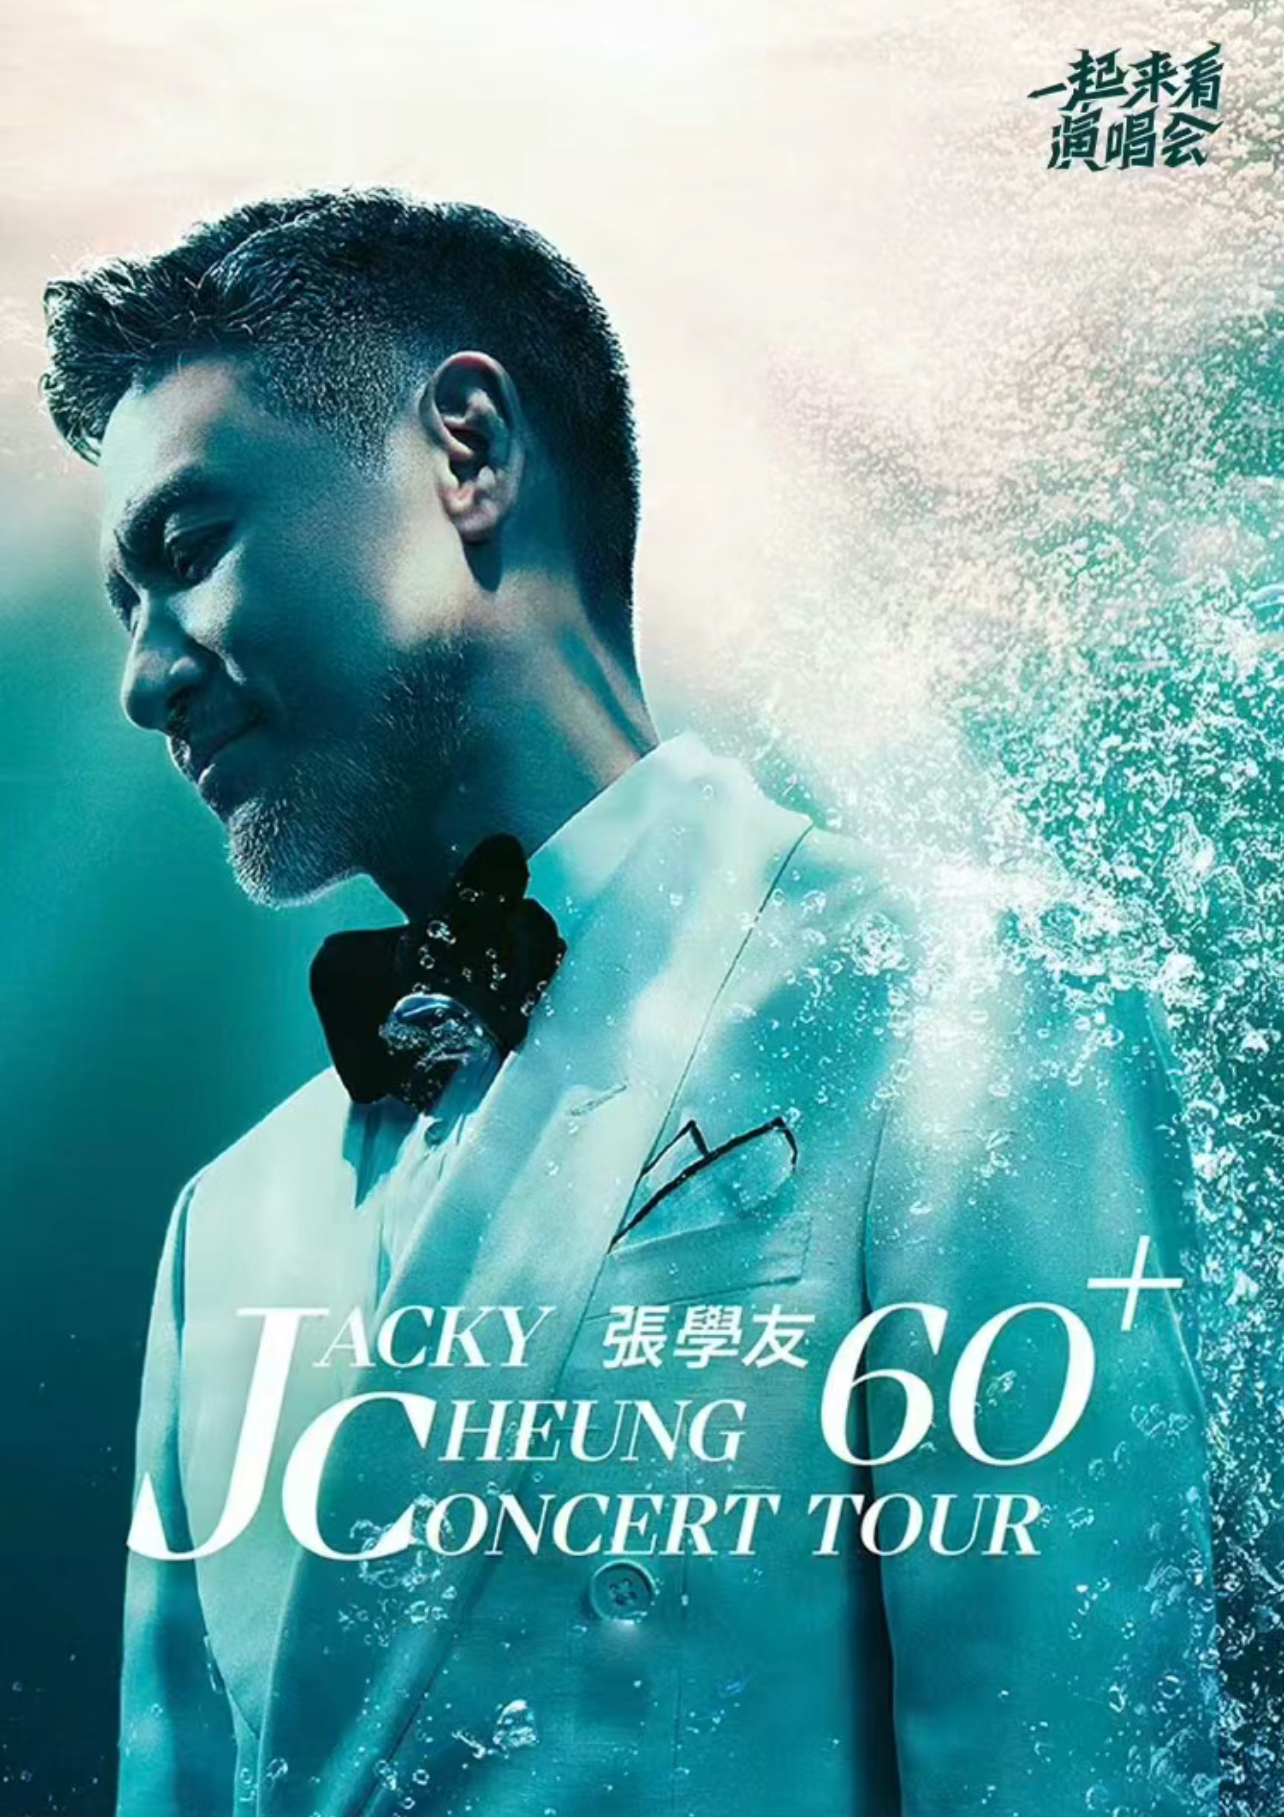 [厦门]JACKY CHEUNG 60+ CONCERT TOUR 张学友60+巡回演唱会-厦门站